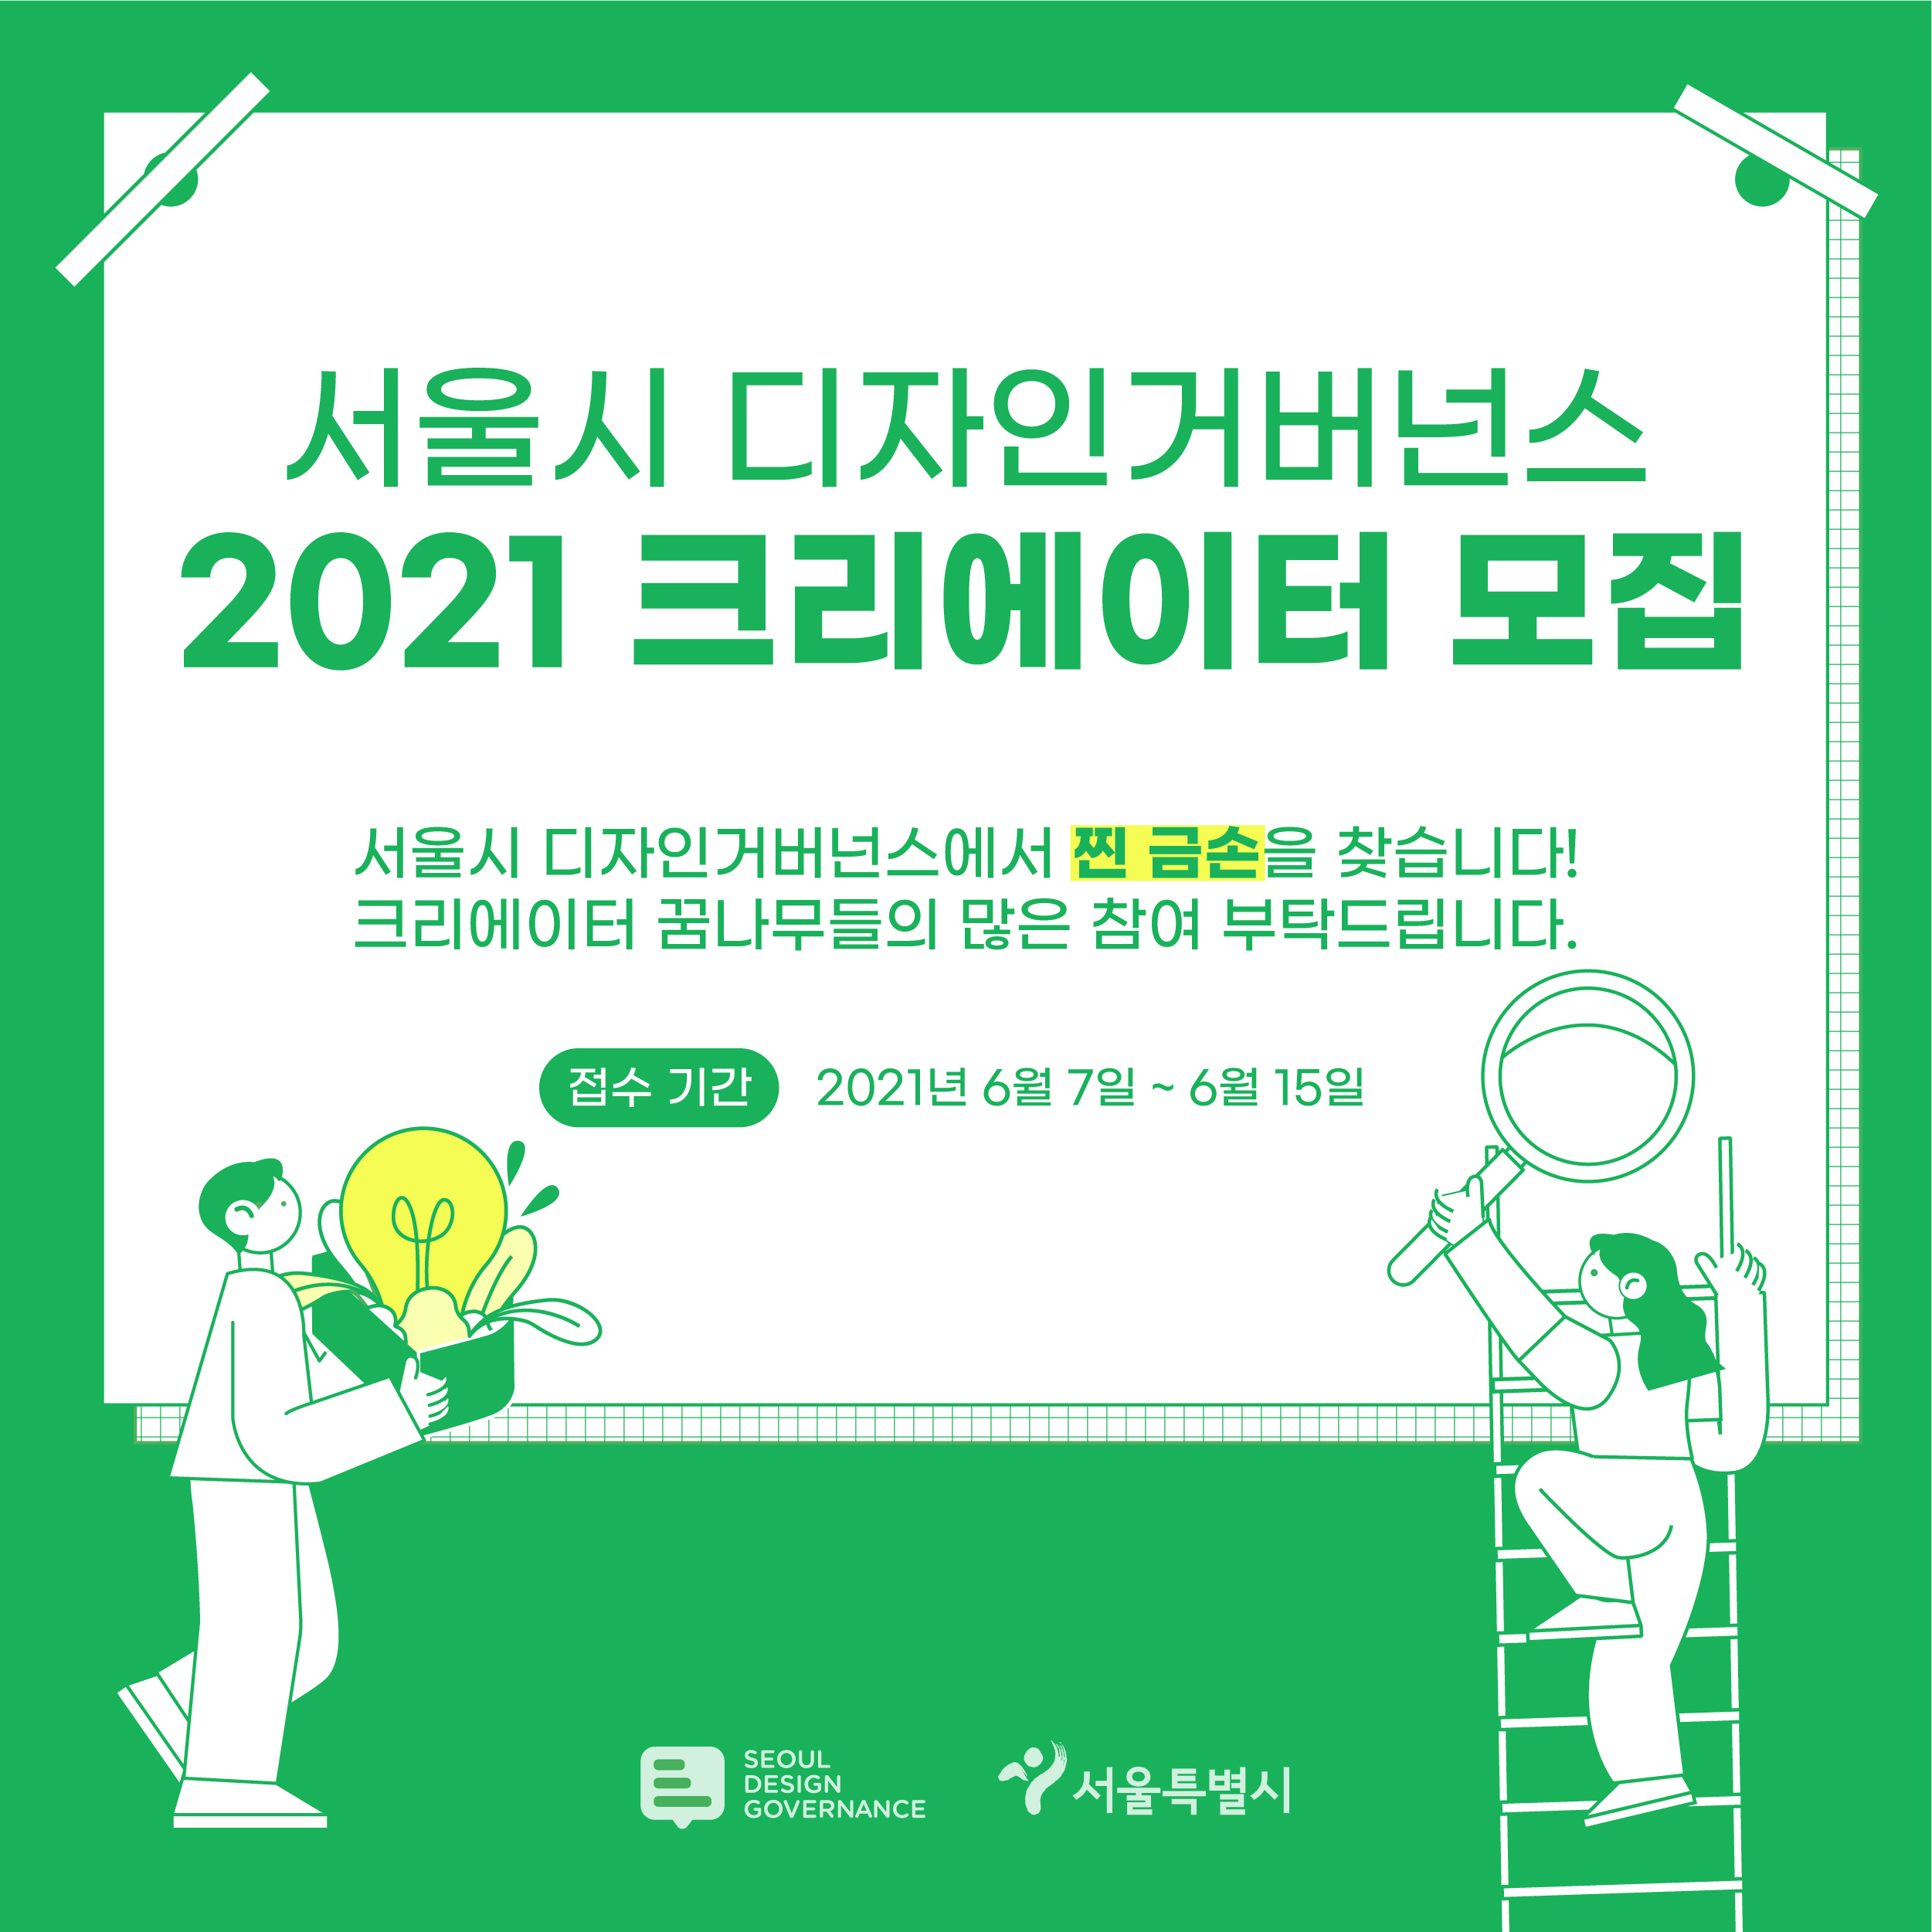 2021 서울시 디자인거버넌스 크리에이터 모집